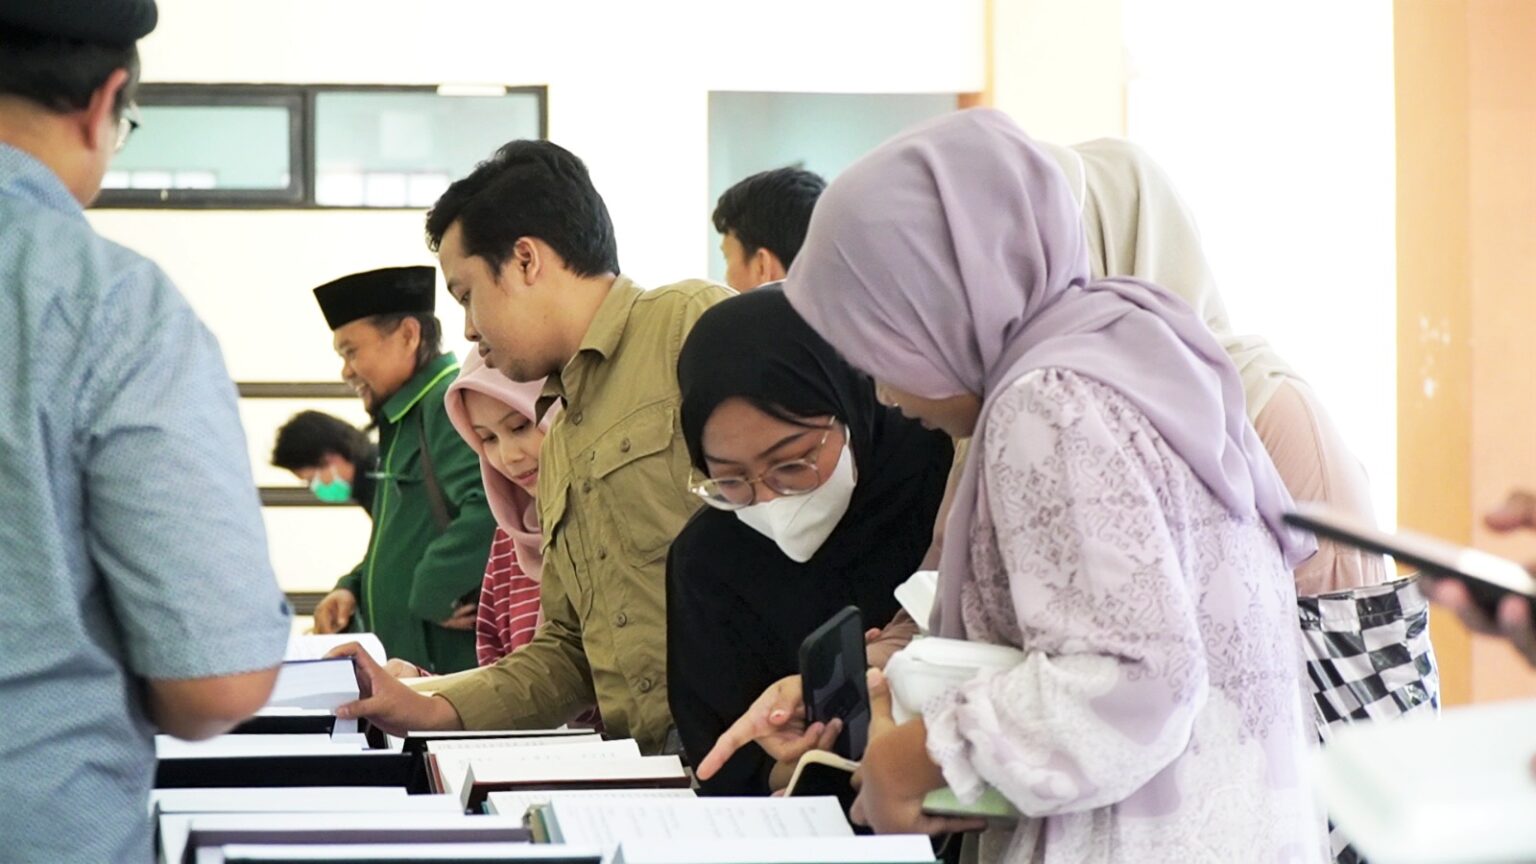 Pameran ini digelar oleh Komunitas Muslim Ahmadiyah Indonesia guna memperkenalkan 100 terjemahan Al Quran dalam berbagai bahasa dunia di Student Center, UIN Syarif Hidayatullah.